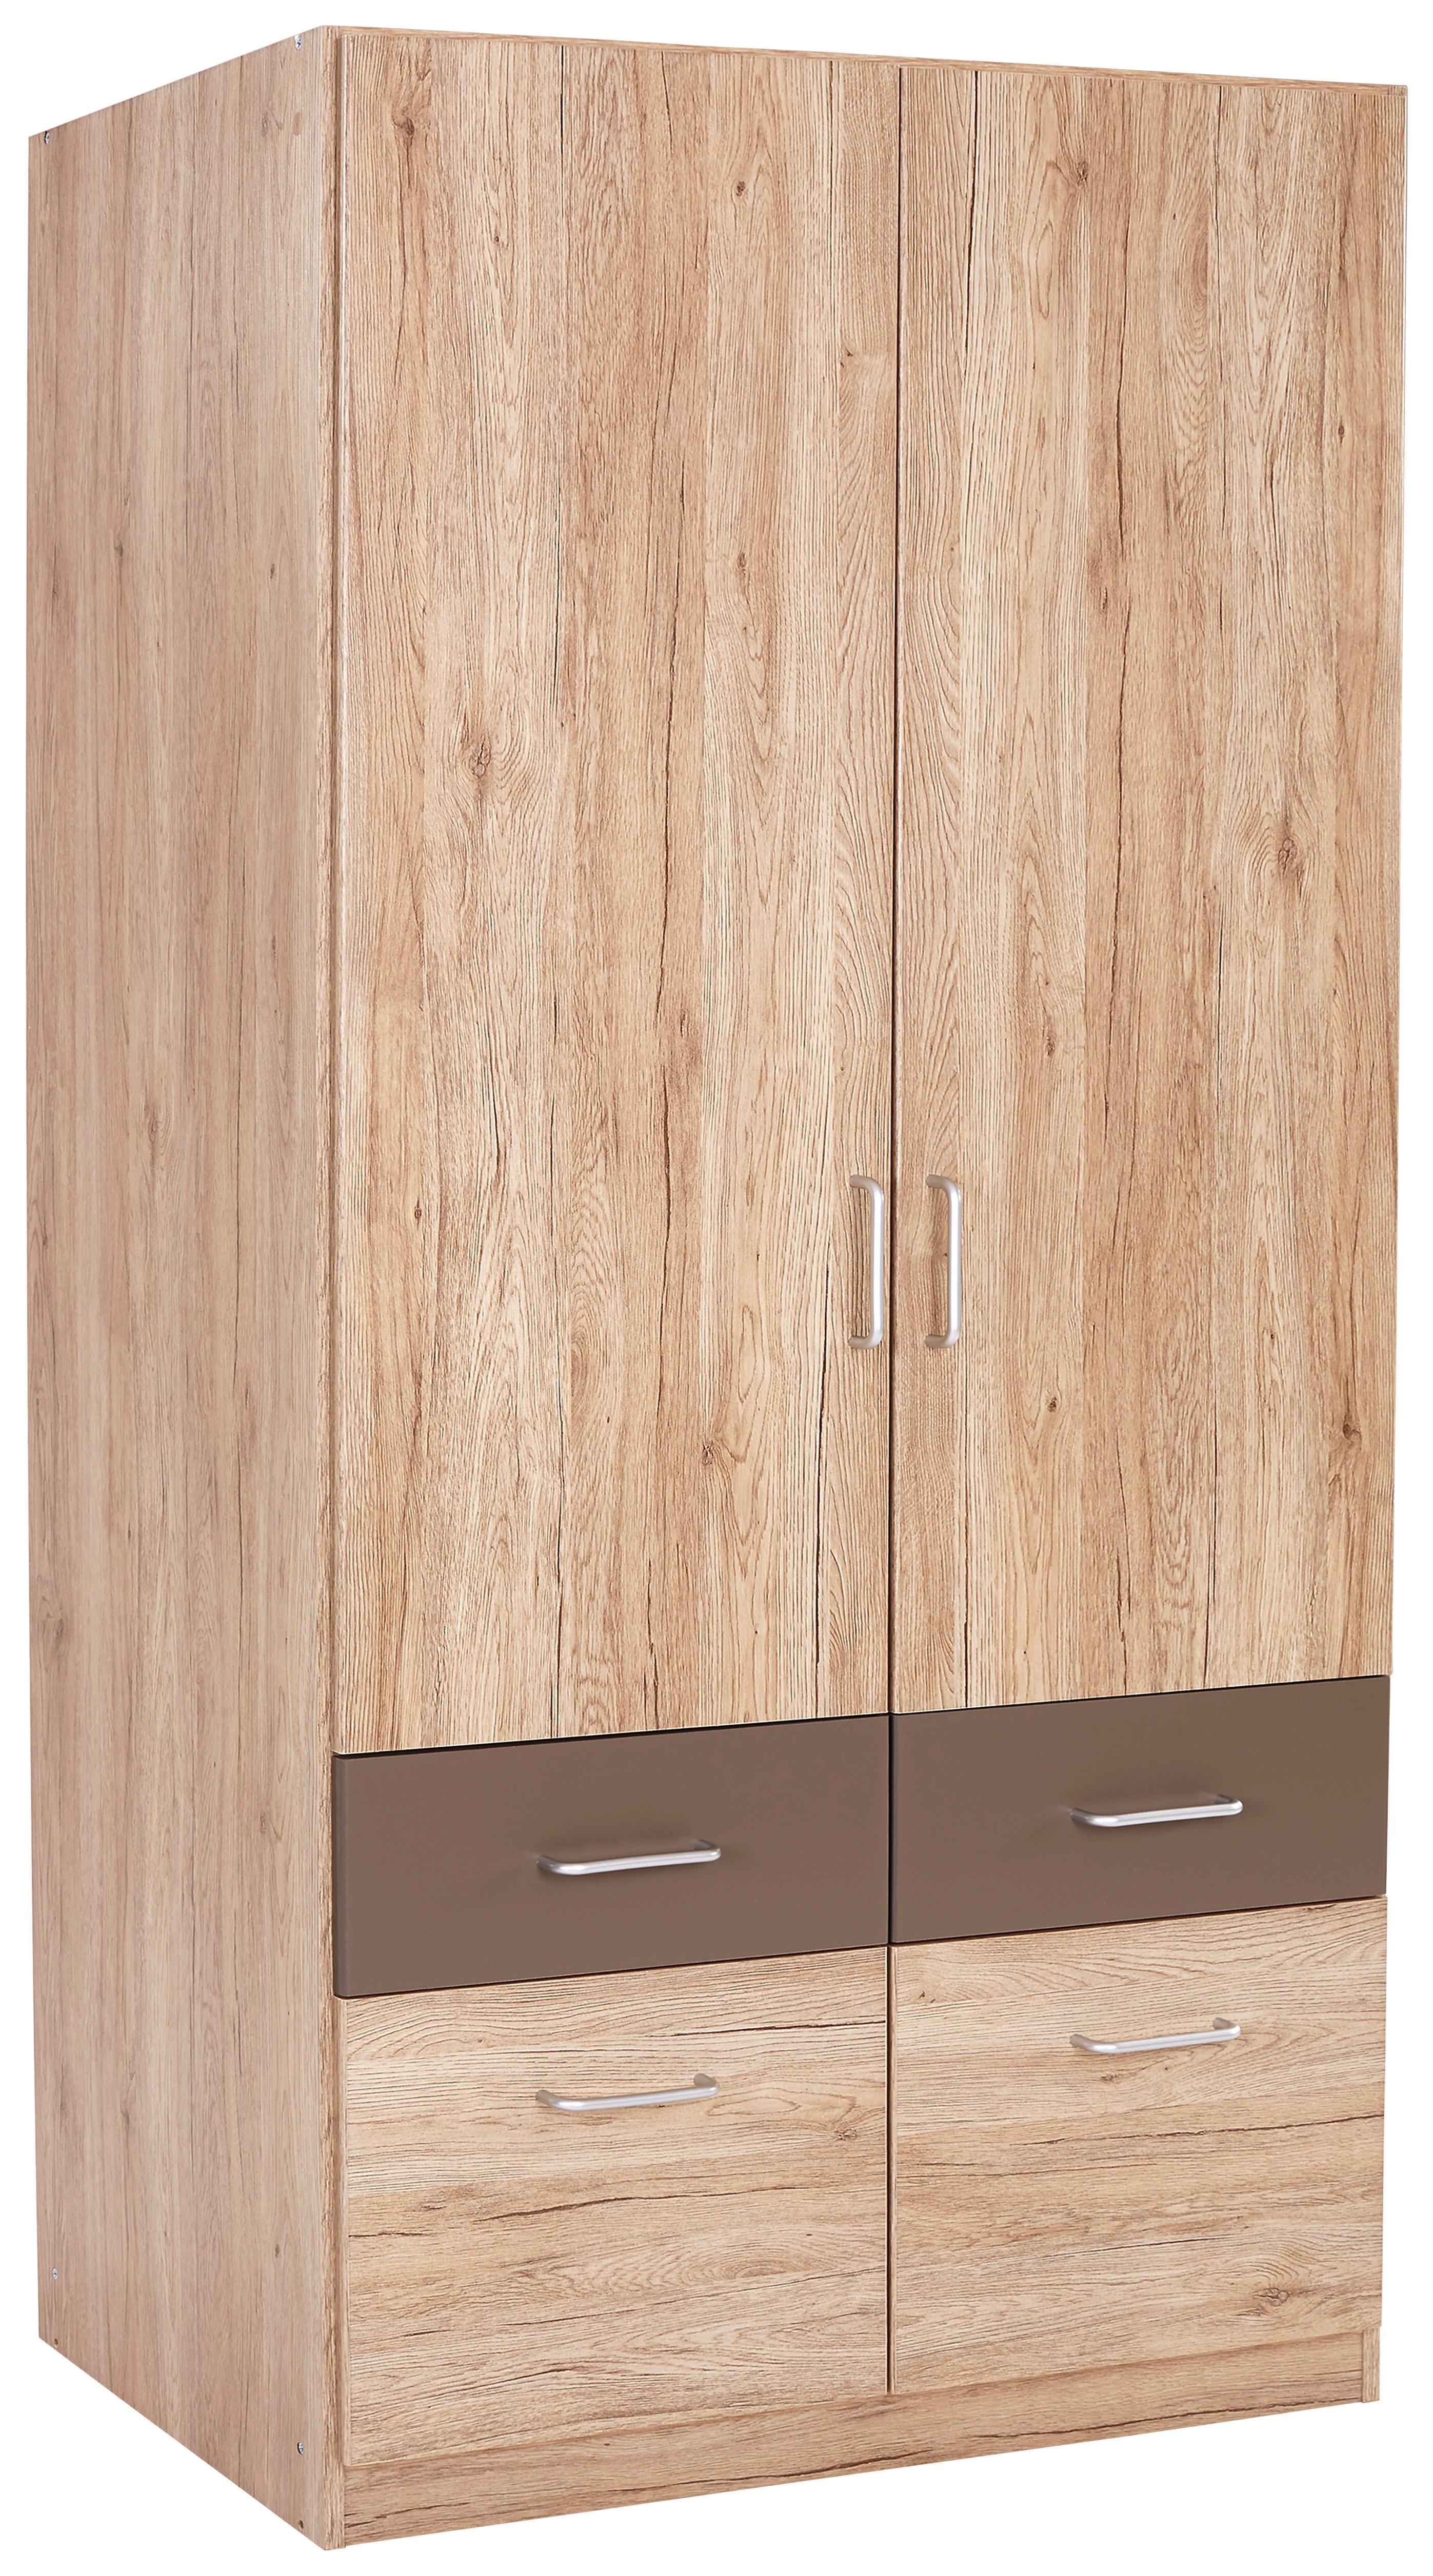 Dulap de haine Aalen - culoare lemn stejar/gri, Konventionell, material pe bază de lemn (91/197/54cm)